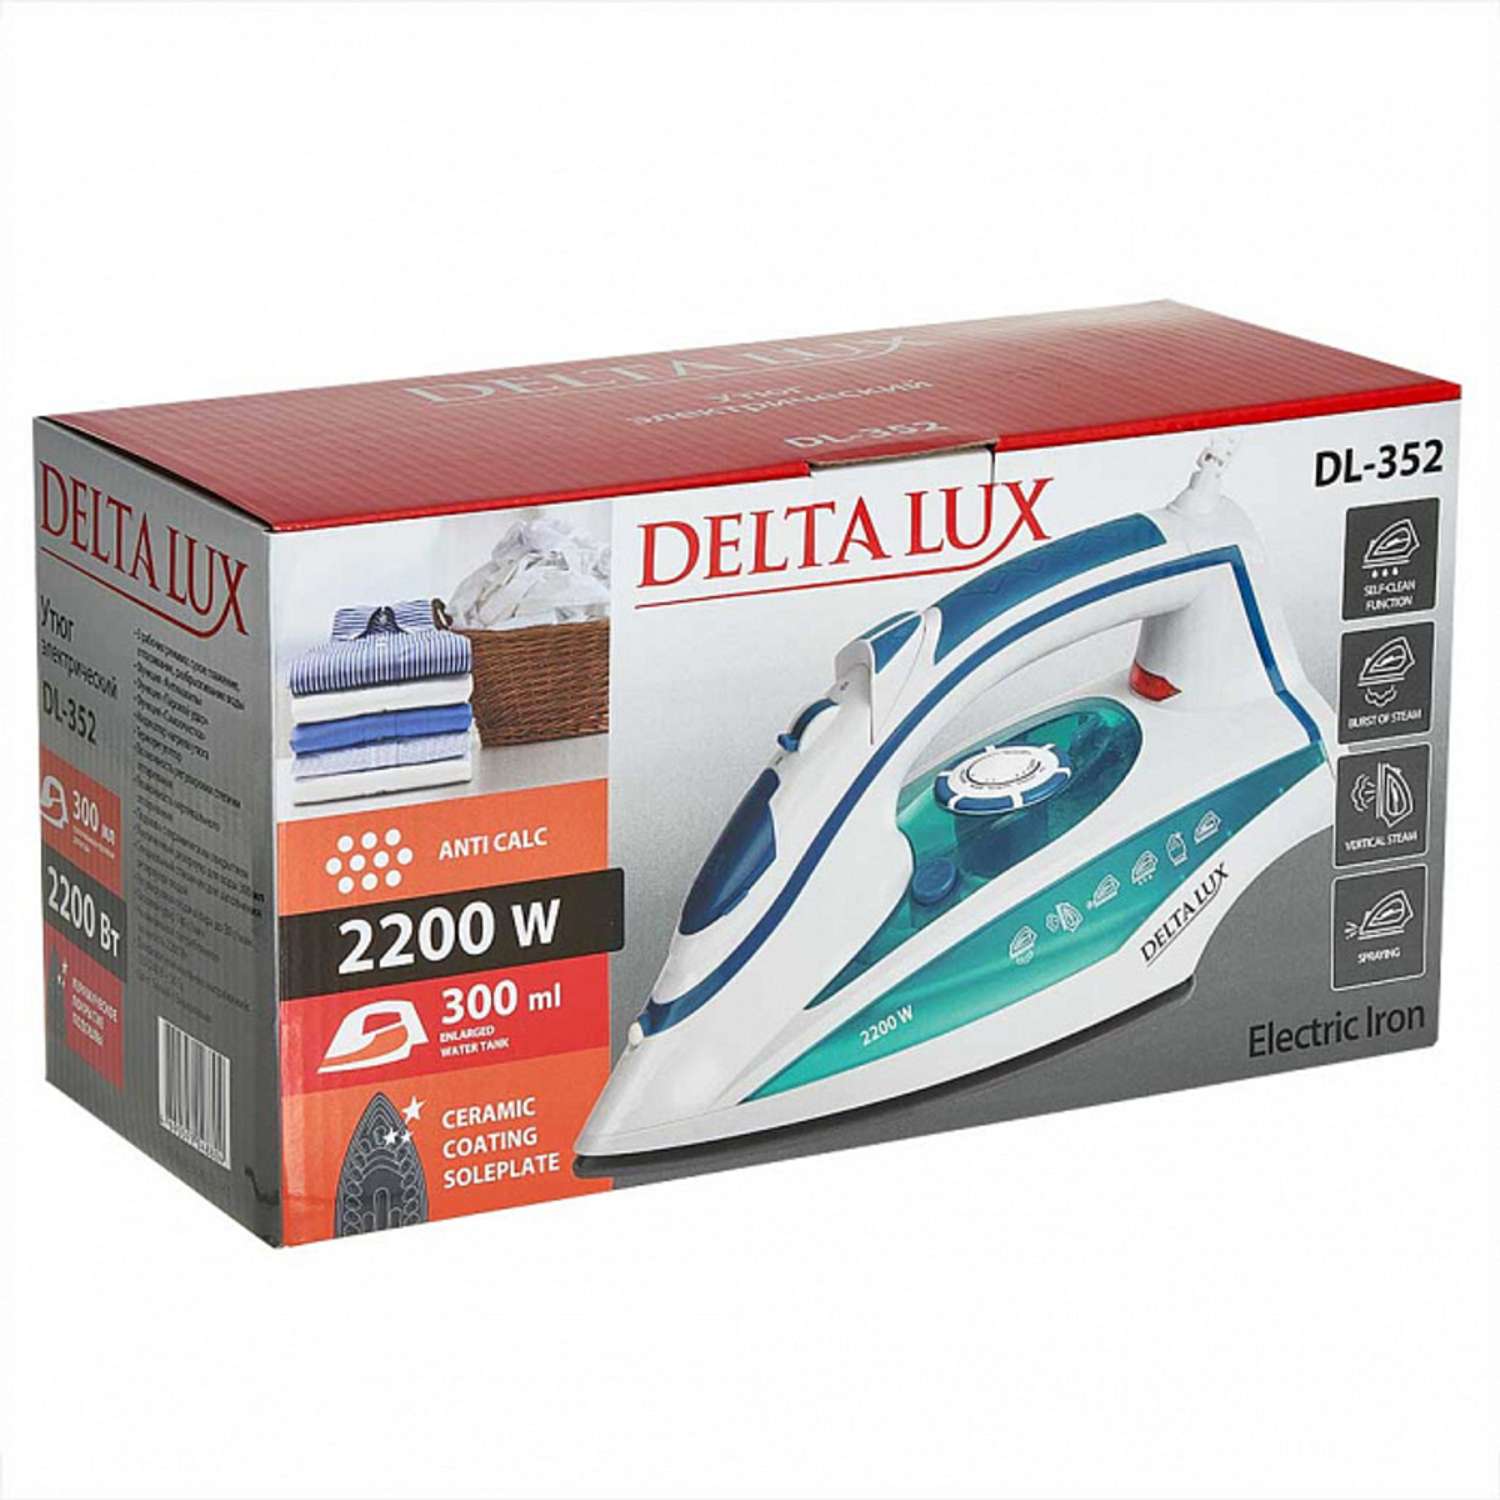 Утюг Delta Lux DL-352 белый с бирюзовым 2200 Вт керамическое покрытие антинакипь - фото 6